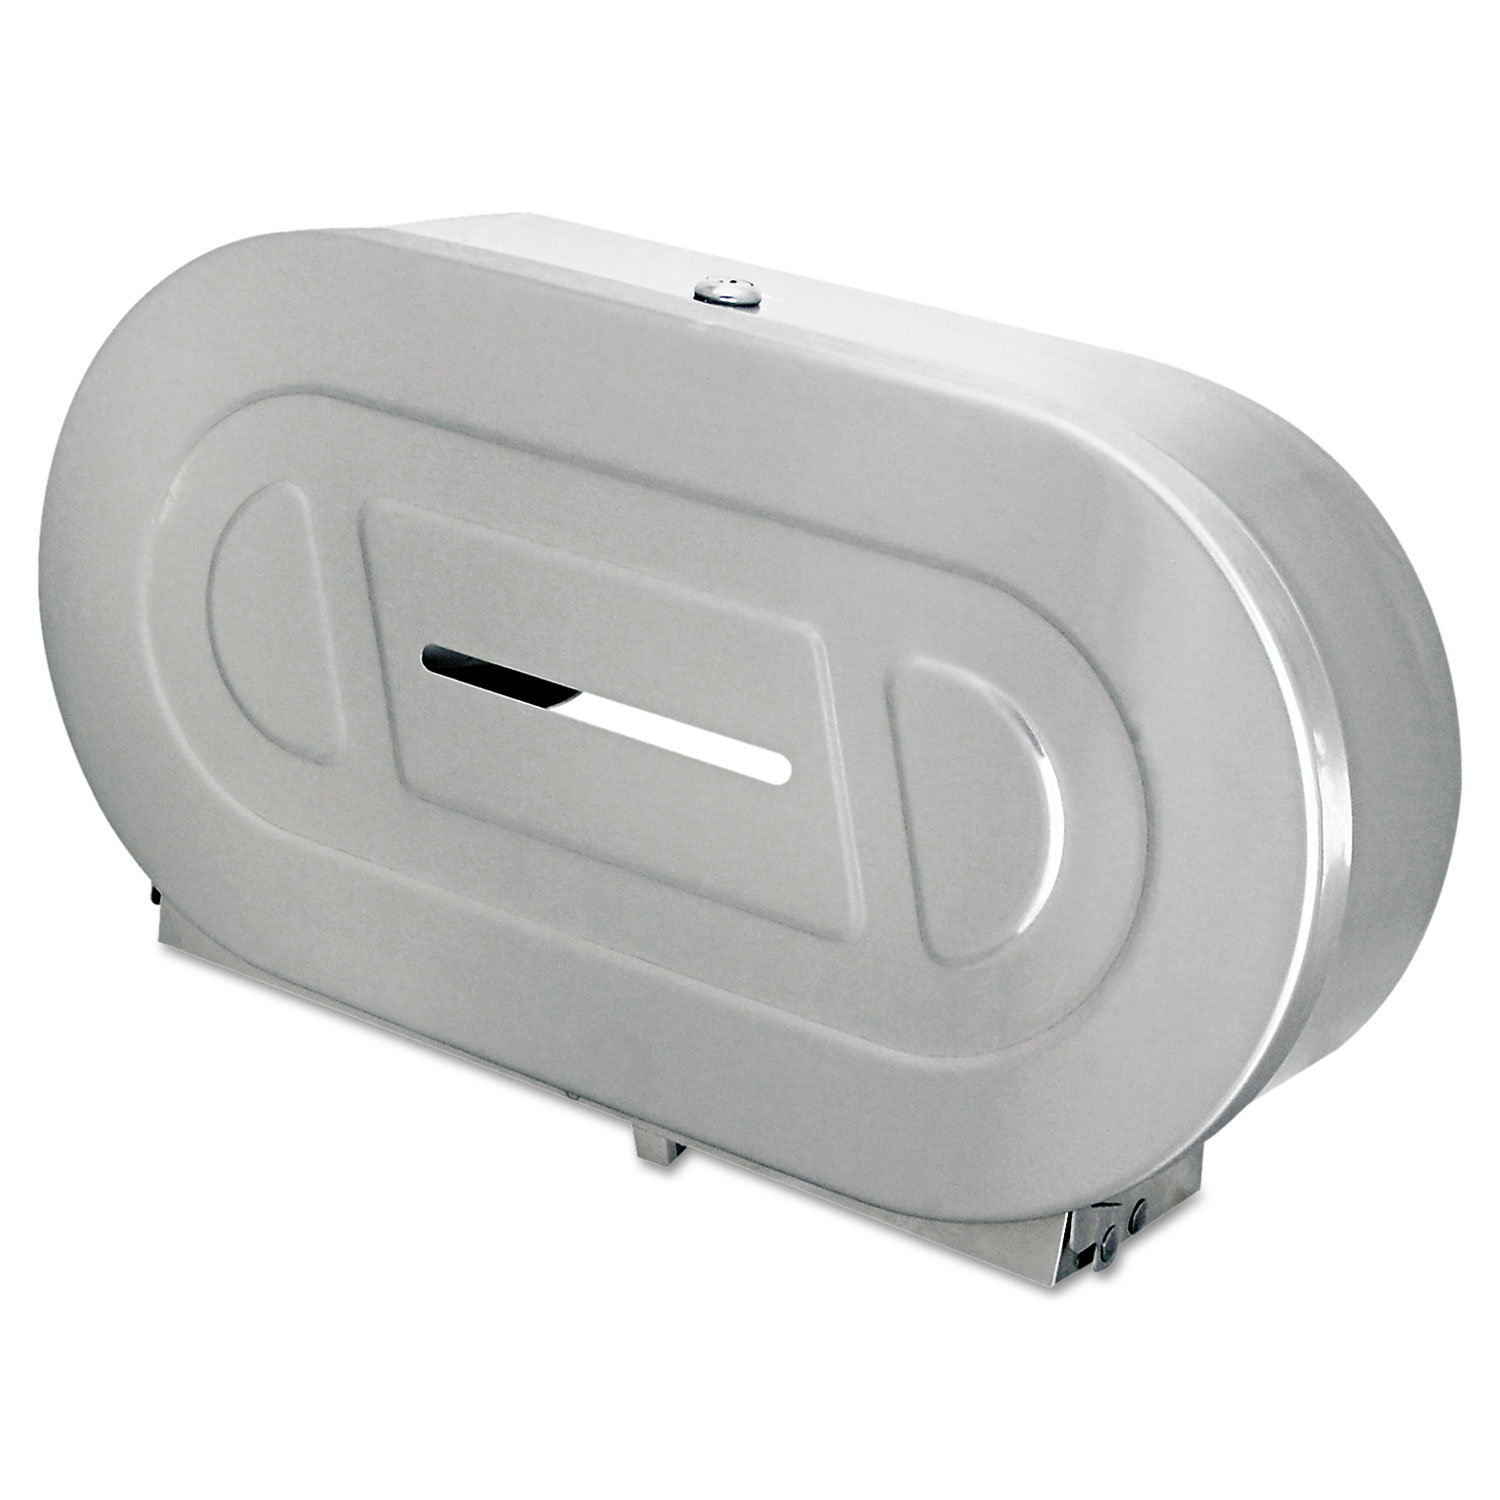 Toilet Tissue 2 Roll Dispenser, Stainless Steel,Jumbo,20 13/16 x 5 5/16 x 11 3/8